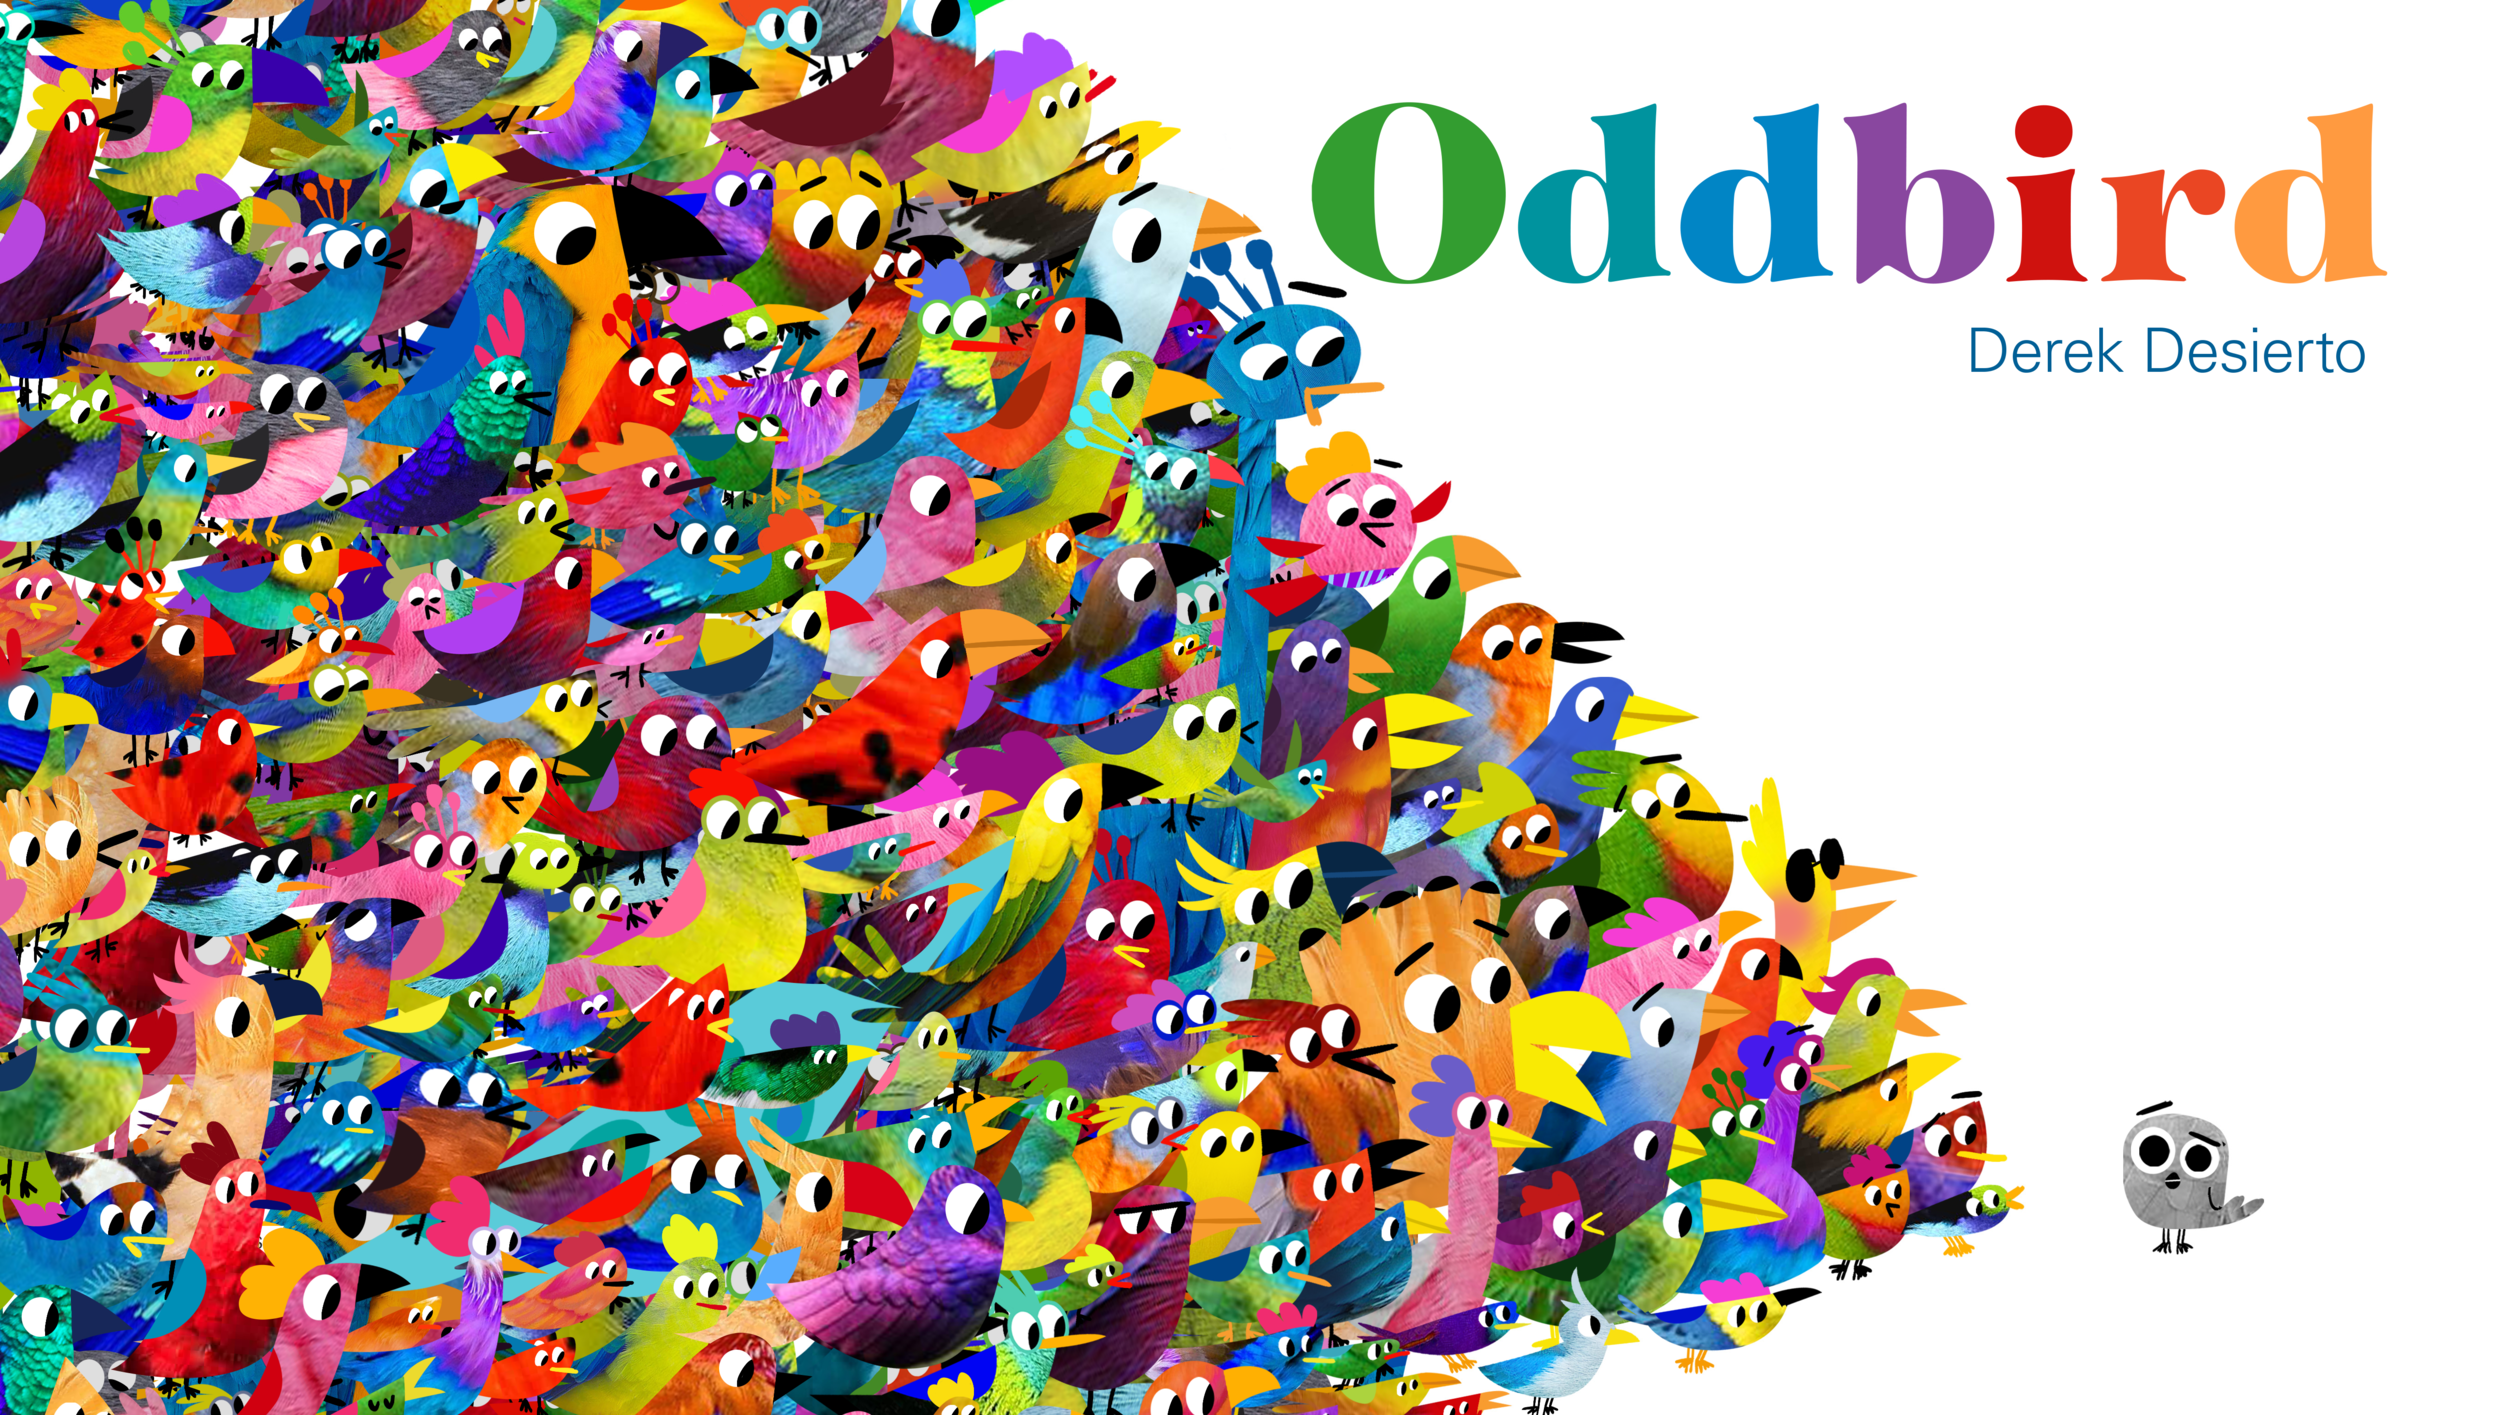 Oddbird_Jacket_Final-1.png